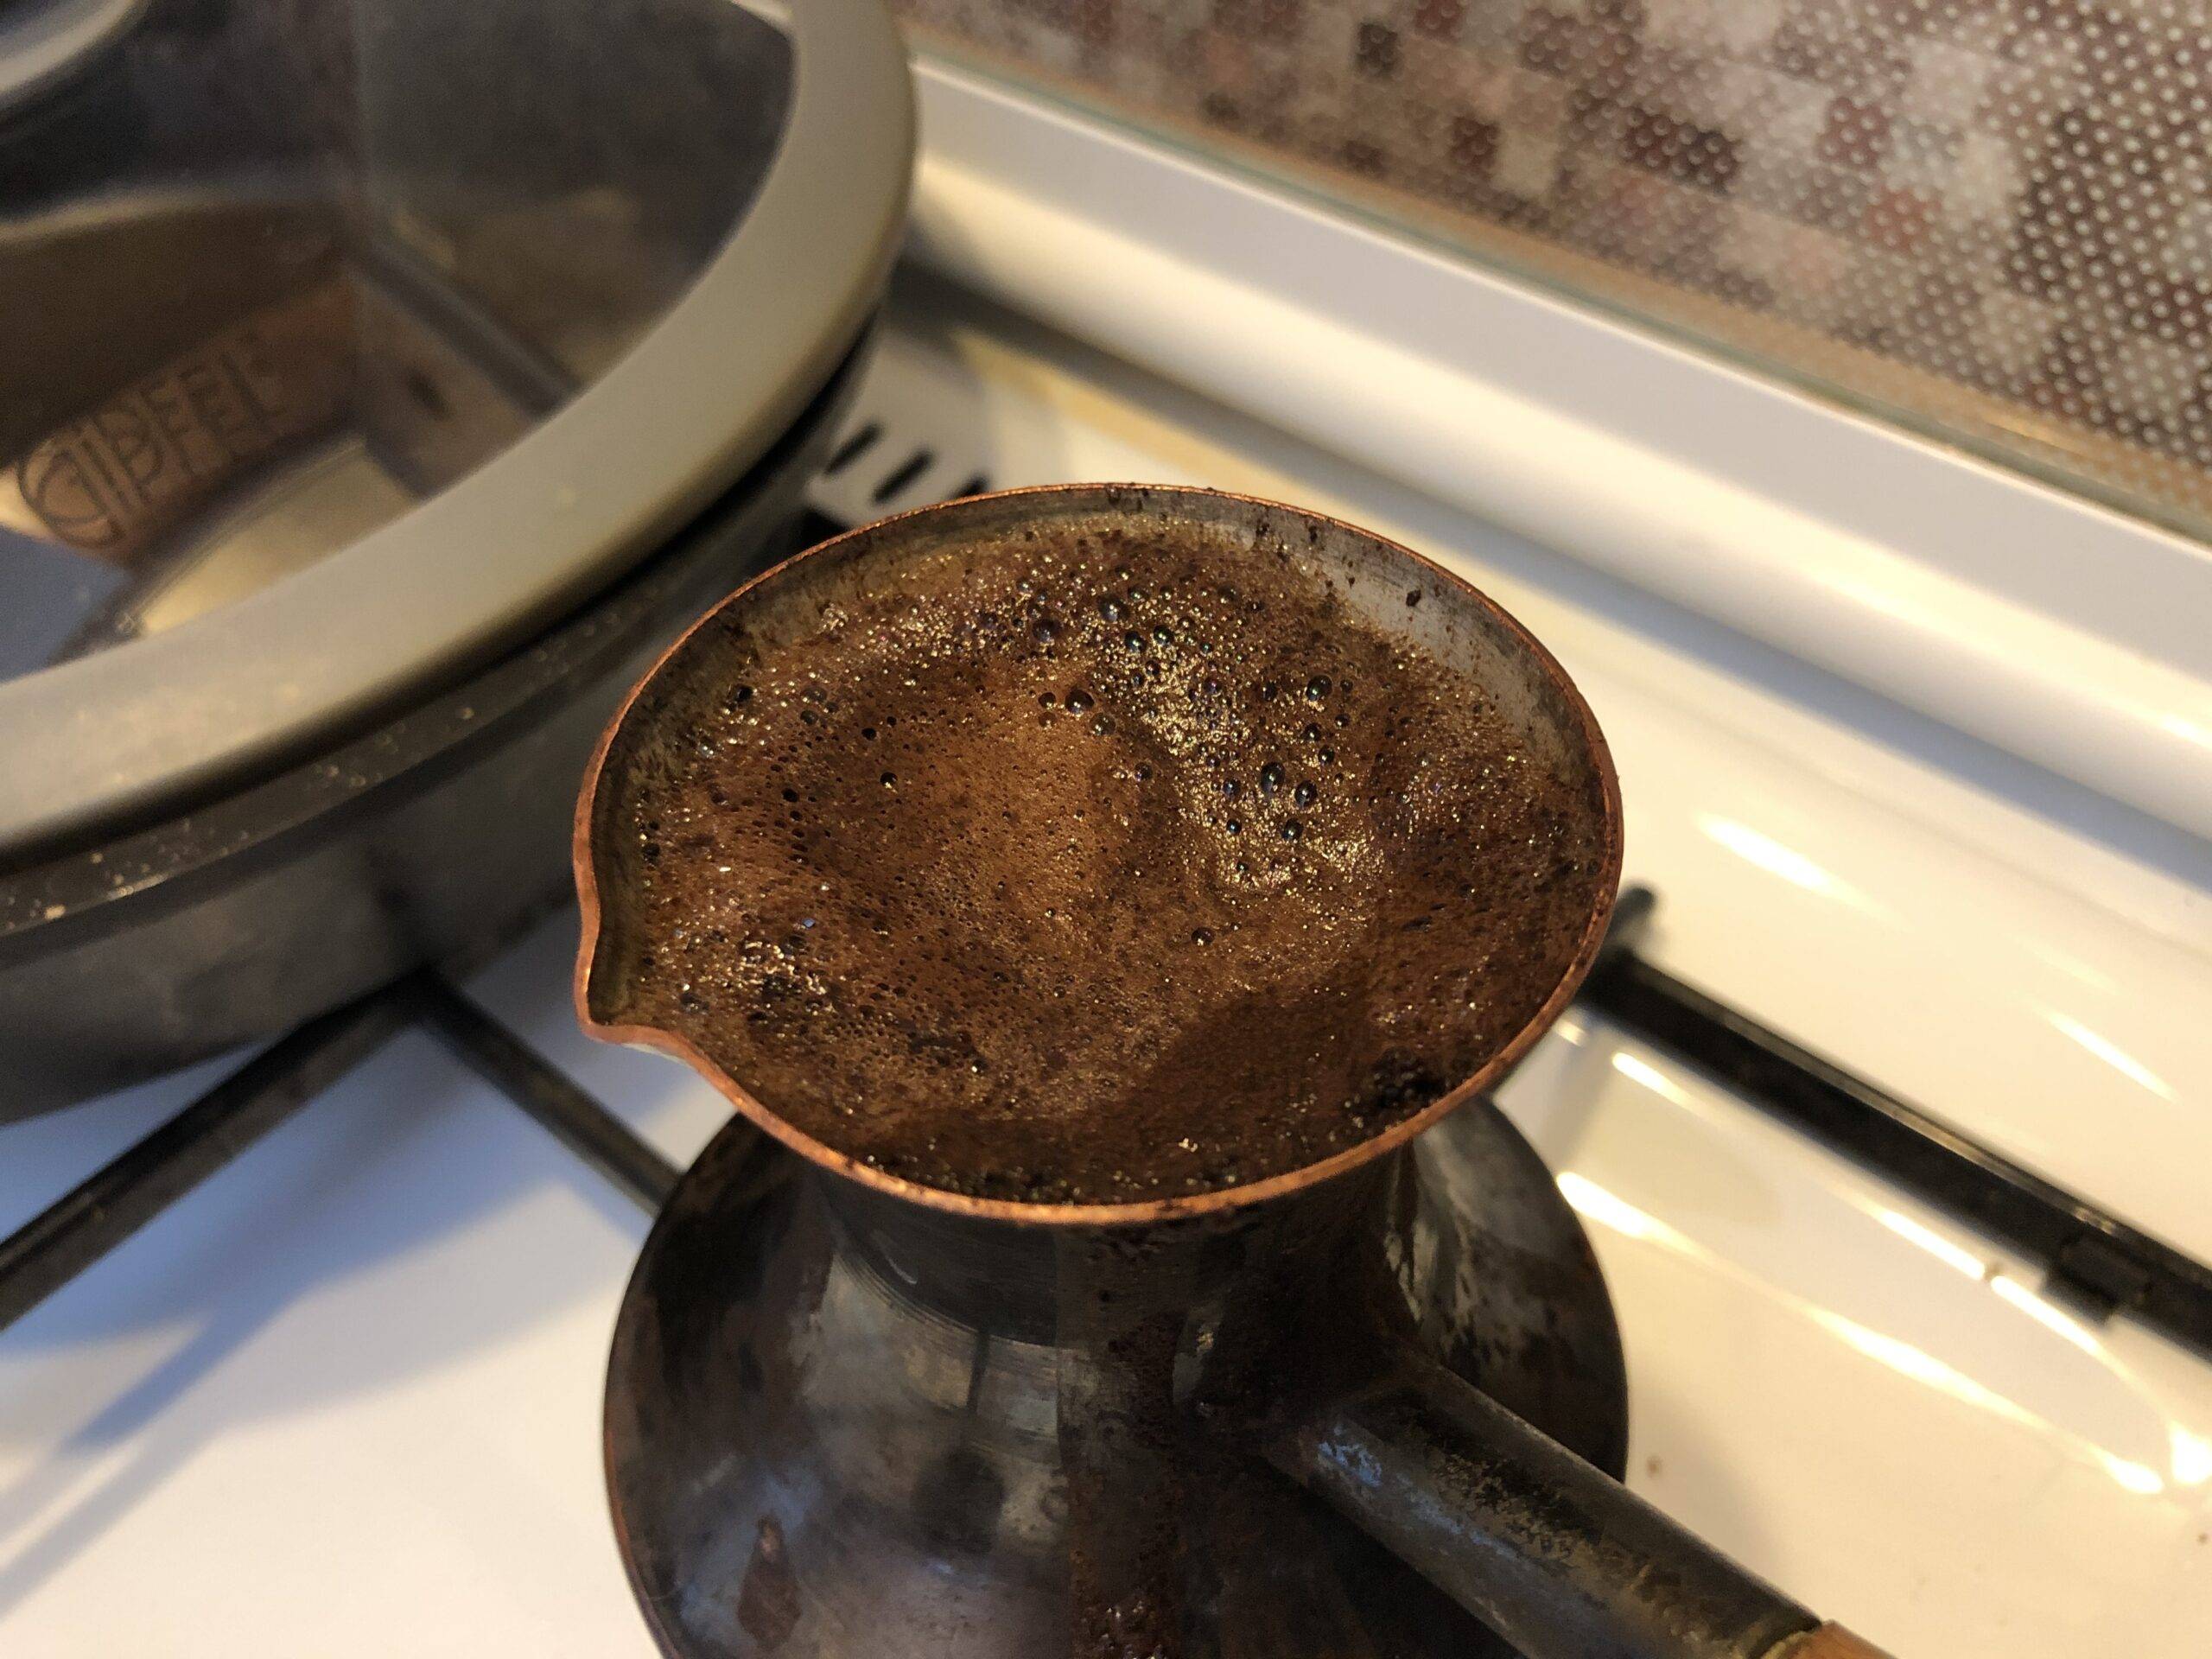 Какой кофе варят в турке